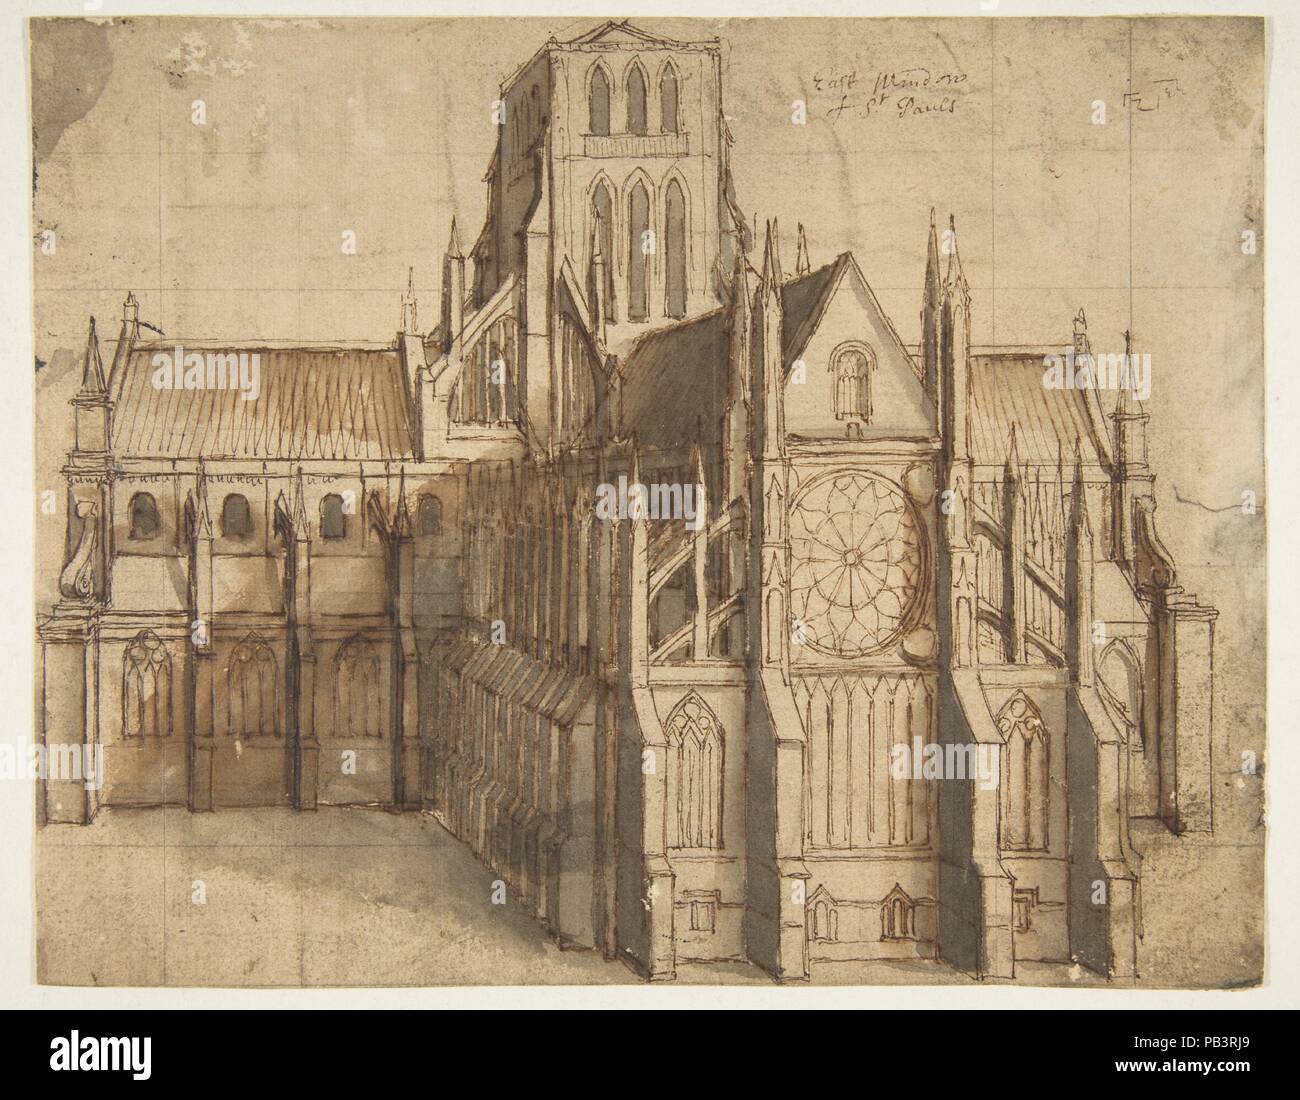 Antigua Catedral de San Pablo, Londres, visto desde el este. Artista: Wenceslao grite (Bohemia Praga, Londres, 1607-1677). Dimensiones: hoja: 6 15/16 x 8 13/16. (17,7 x 22,4 cm). Fecha: 1656-58. Esta detallada, que evoca el dibujo de un importante monumento arquitectónico Británico, actualmente desaparecido, se refiere a una comisión que la artista trabajó en entre 1656 y 1658. El anticuario William Dugdale (1605-1686) había solicitado grite para crear un conjunto de catorce fotos que documentan el interior y el exterior de la antigua catedral de San Pablo, Londres. Estos eran para ilustrar Dugdale es innovadora publicación "El Foto de stock